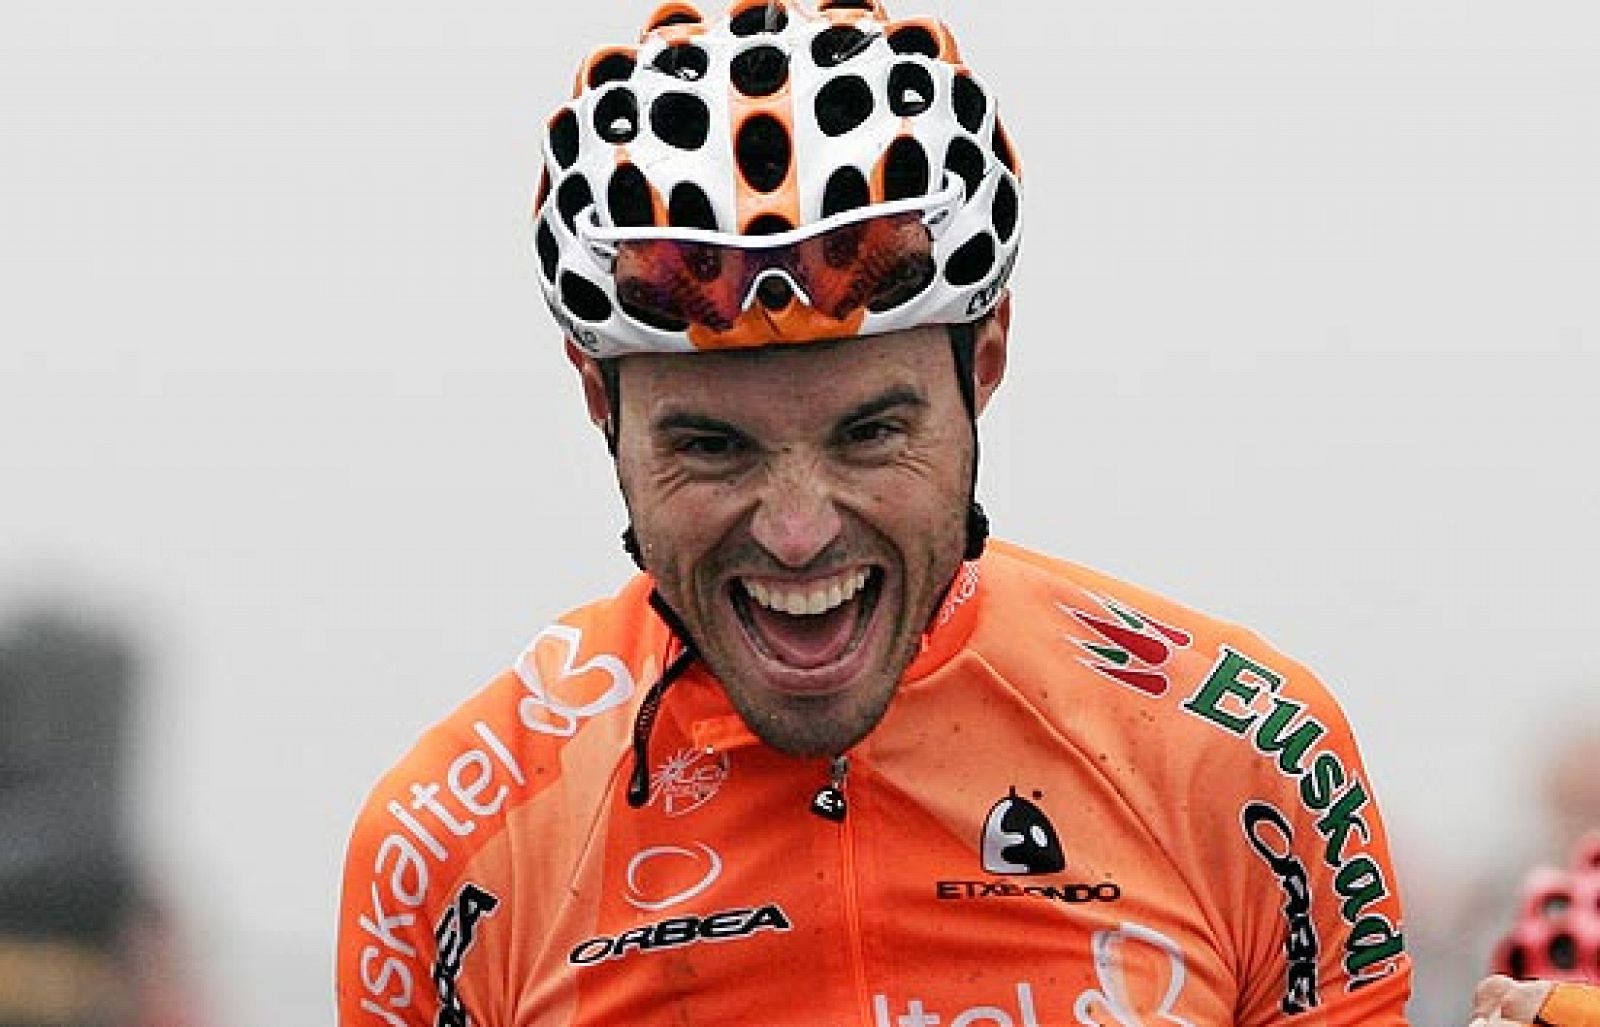 Samuel Sánchez parte como favorito en la Vuelta